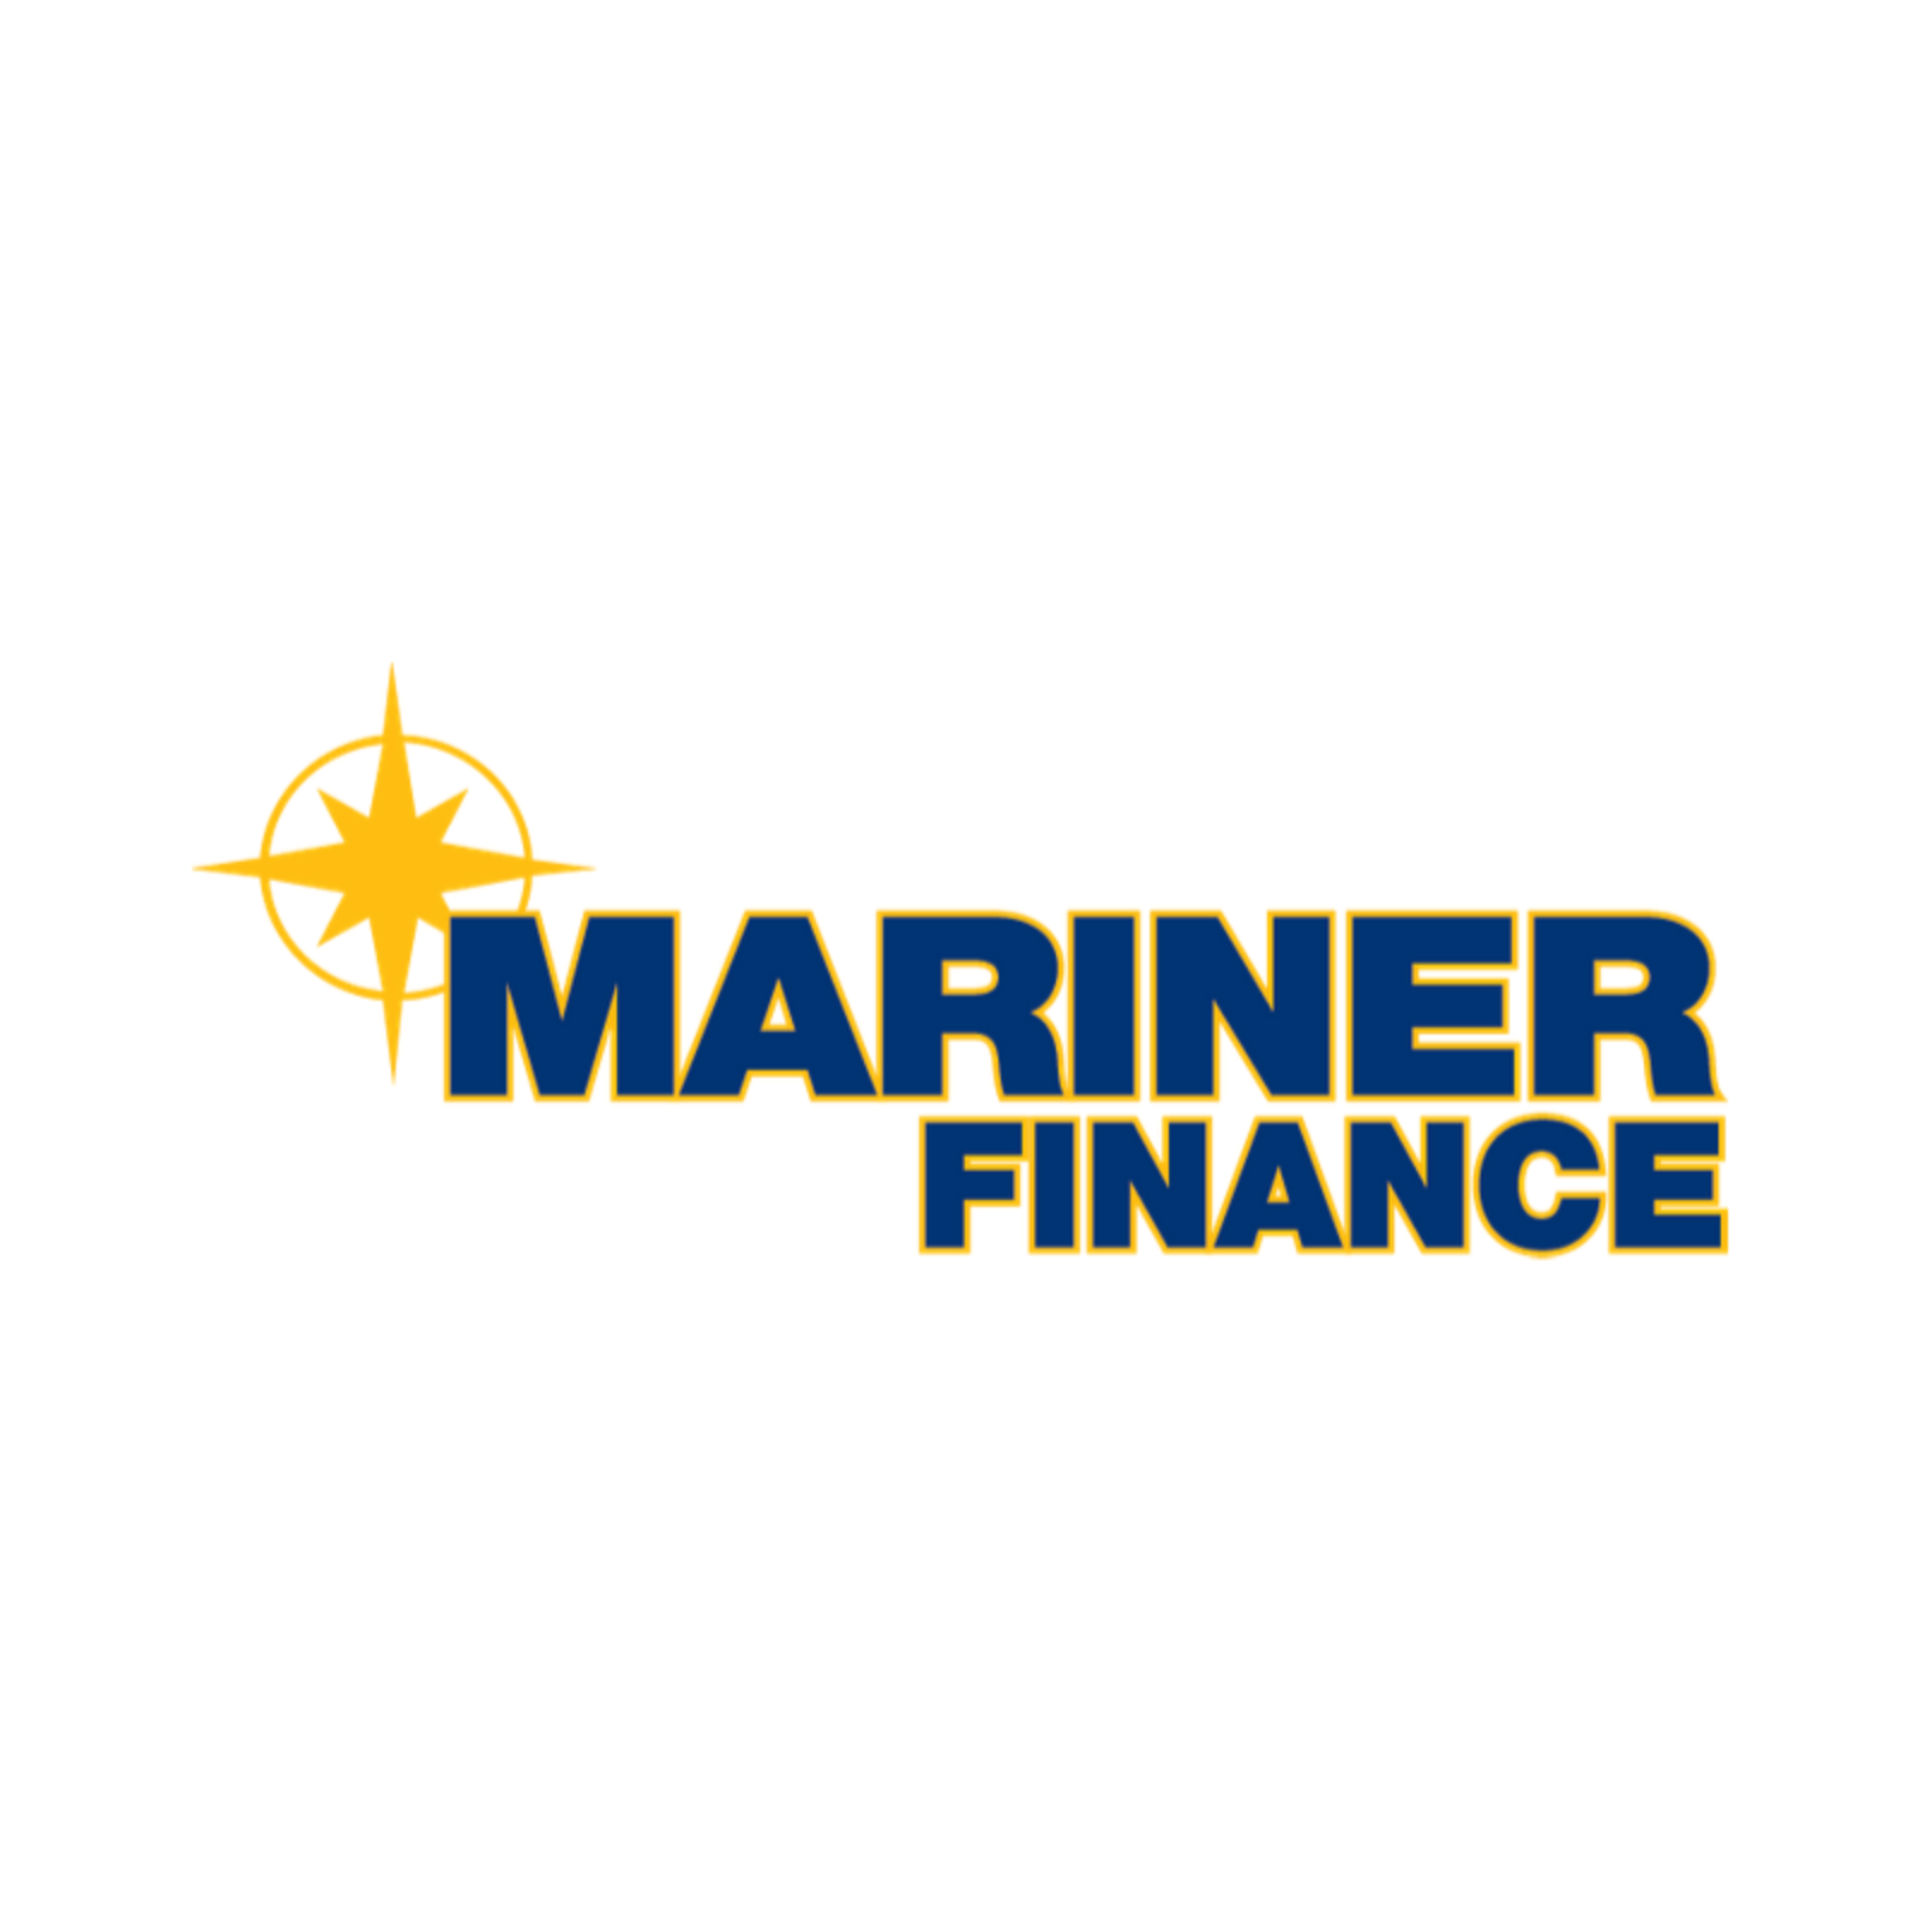 mariner-finance-logo.png